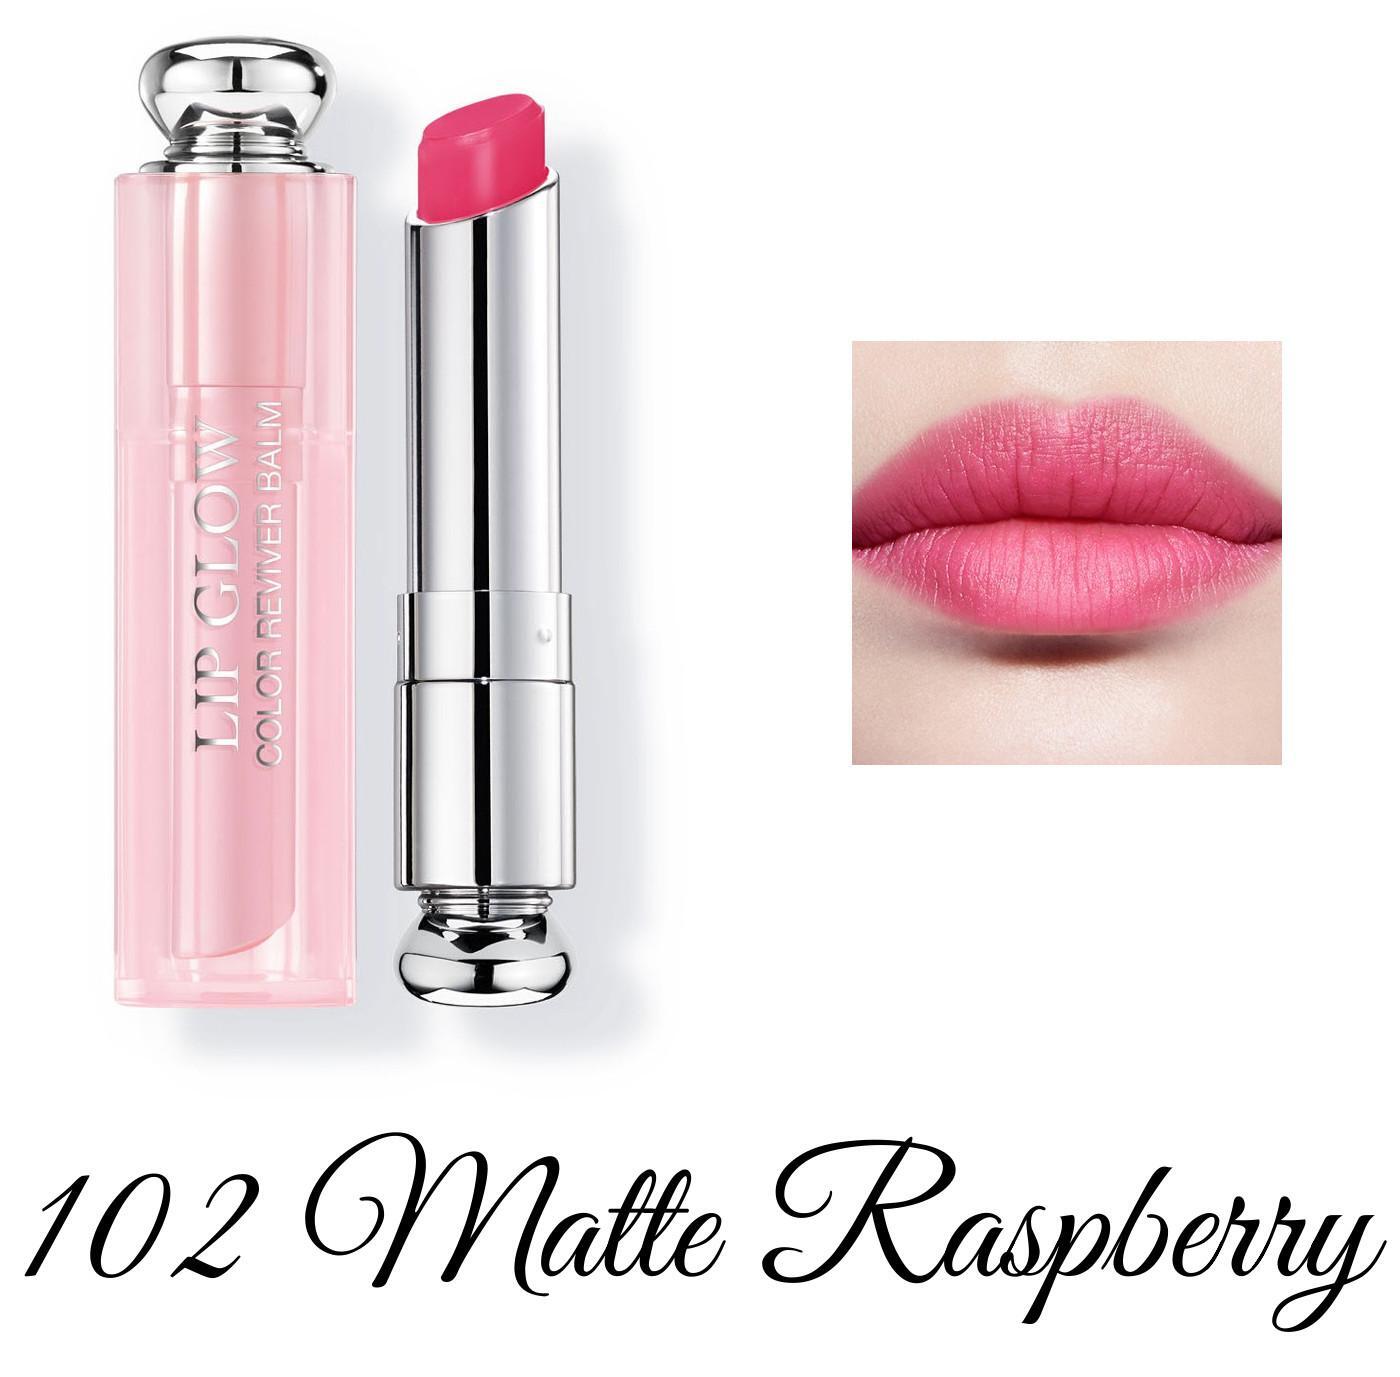 Son Dưỡng Dior Addict Lip Glow Matte Raspberry 102  Màu Hồng Dâu  Vilip  Shop  Mỹ phẩm chính hãng